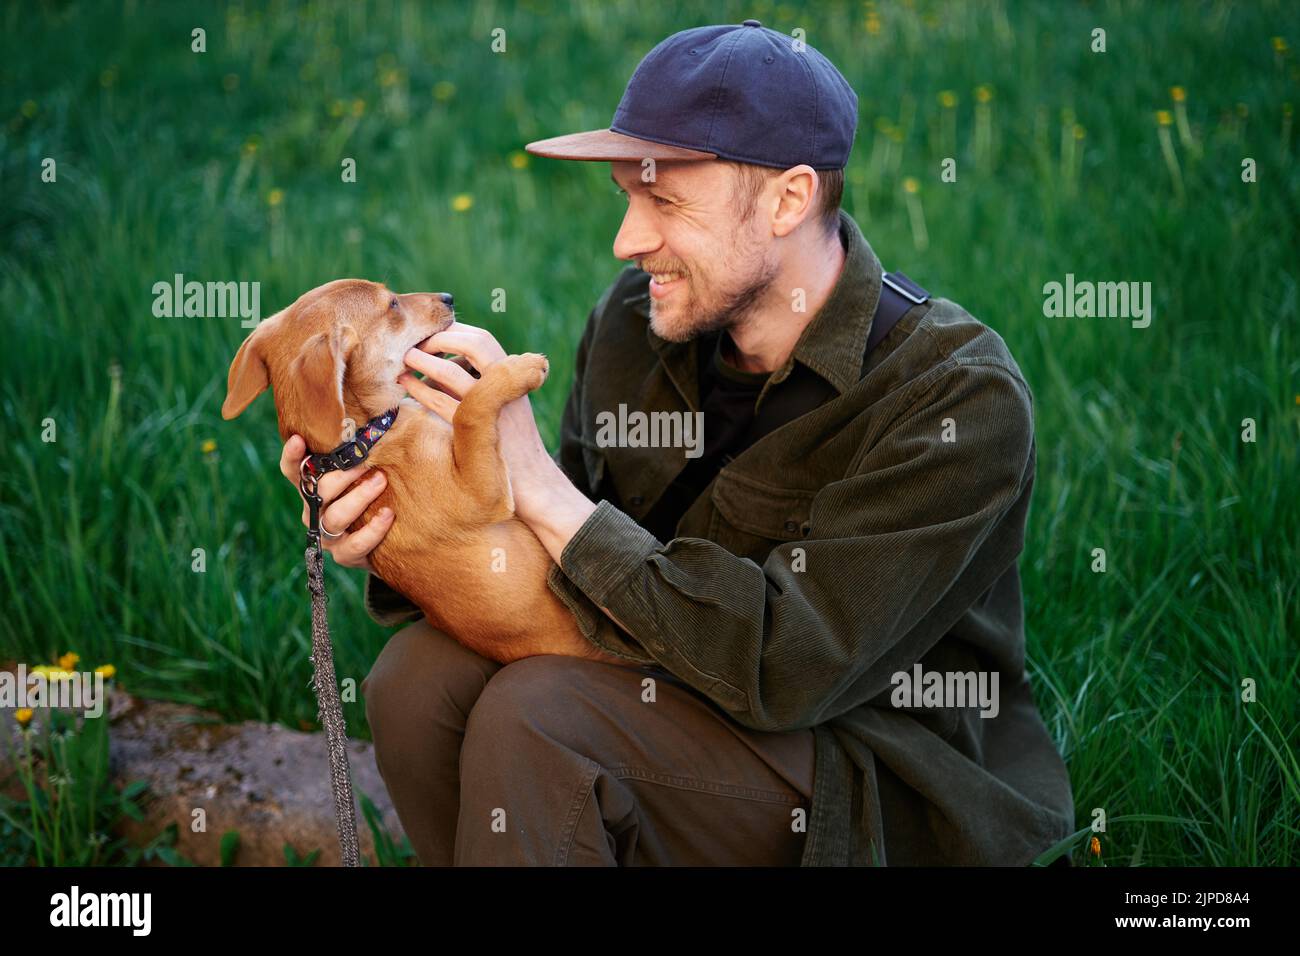 Hund als Familienmitglied Konzept. Attraktiver kaukasischer Mann in Baseballmütze, der auf einem Gras im Park sitzt und mit einem kleinen braunen Welpen spielt, der ihn am Finger beißt. Junger Mann mit Dackel im Freien Stockfoto